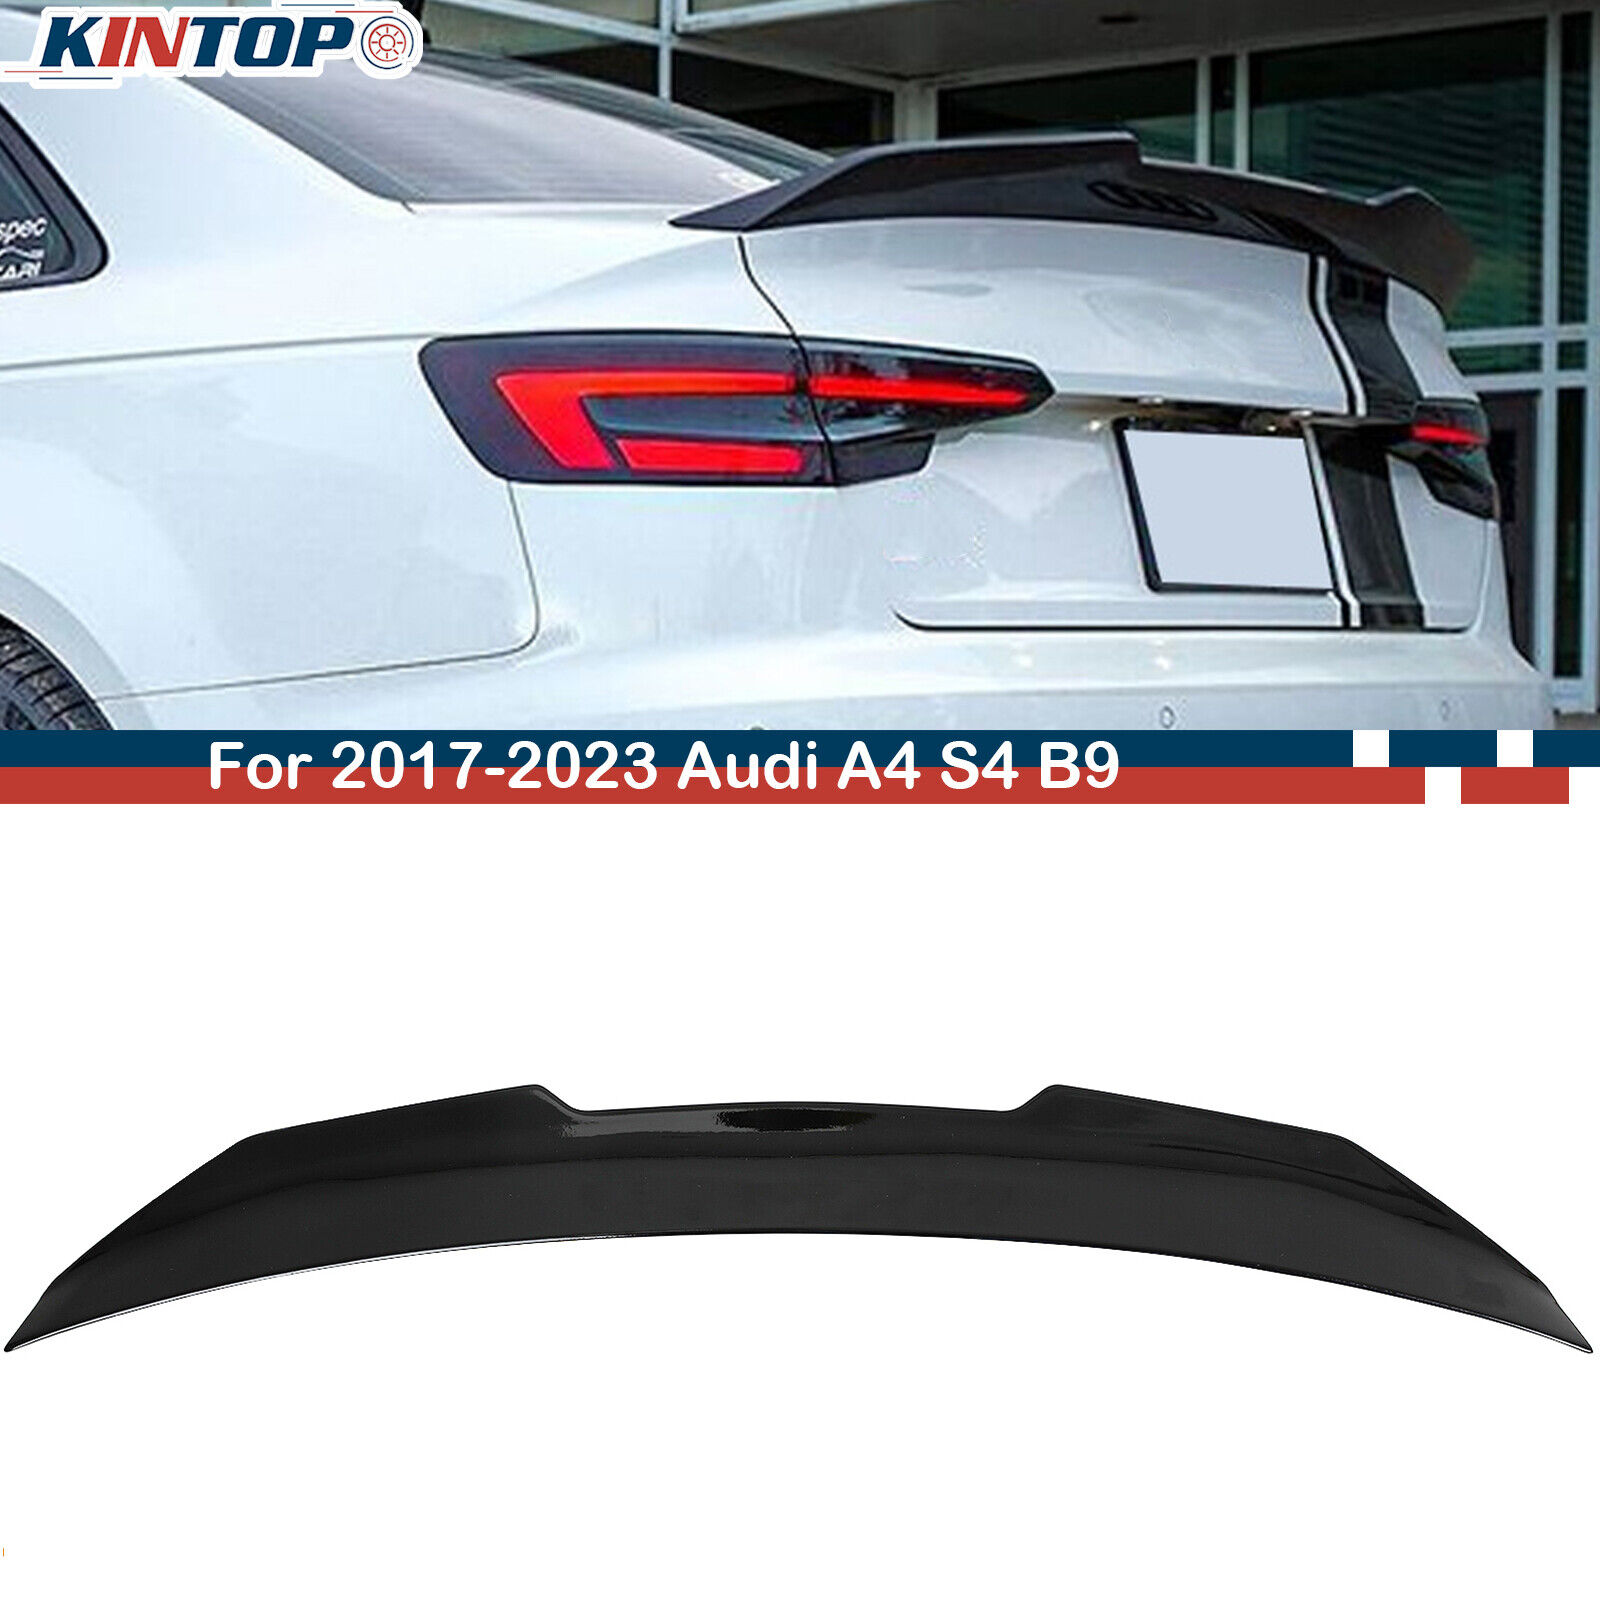 For 17-23 Audi A4 S4 B9 Sedan High Kick Duckbill Gloss Black Rear Trunk Spoiler